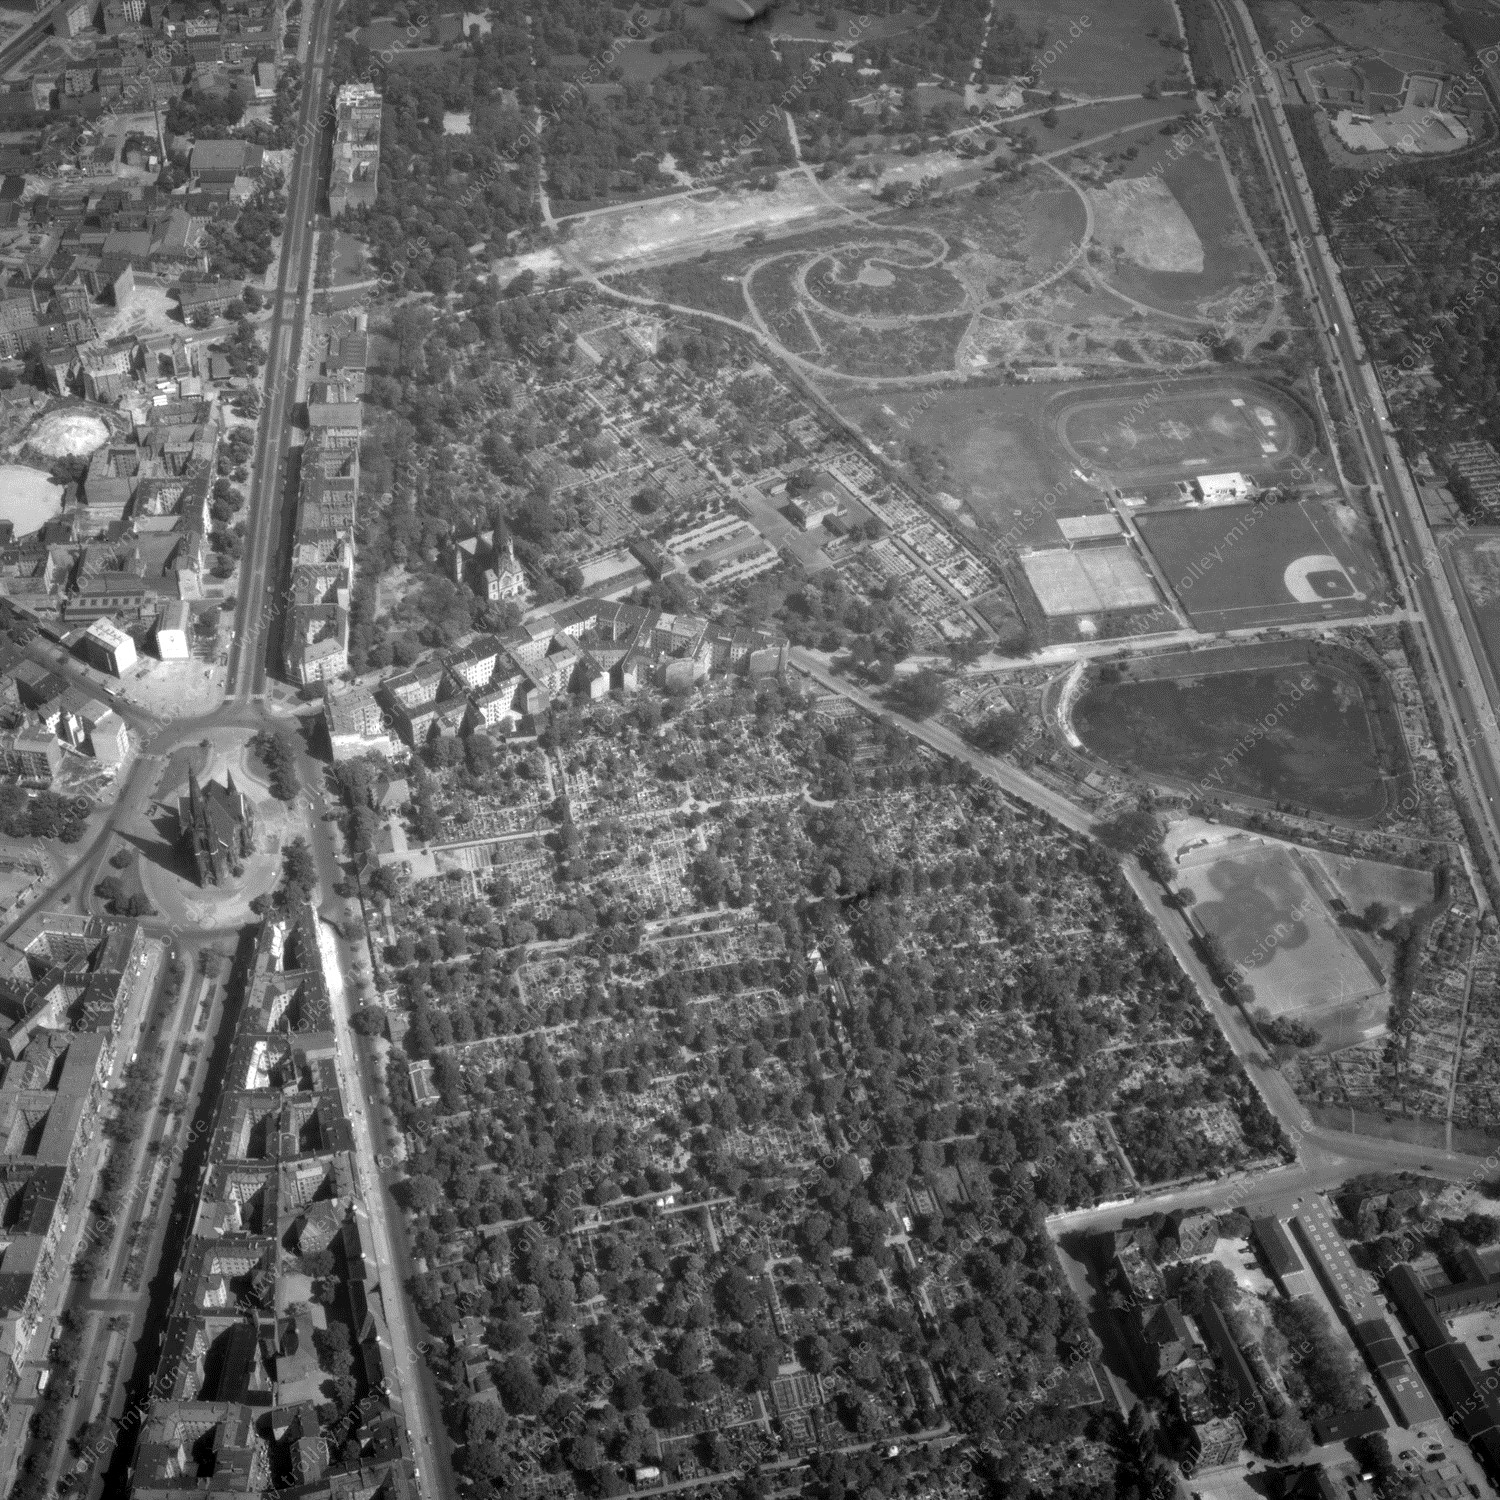 Alte Fotos und Luftbilder von Berlin - Luftbildaufnahme Nr. 02 - Historische Luftaufnahmen von West-Berlin aus dem Jahr 1954 - Flugstrecke Kilo